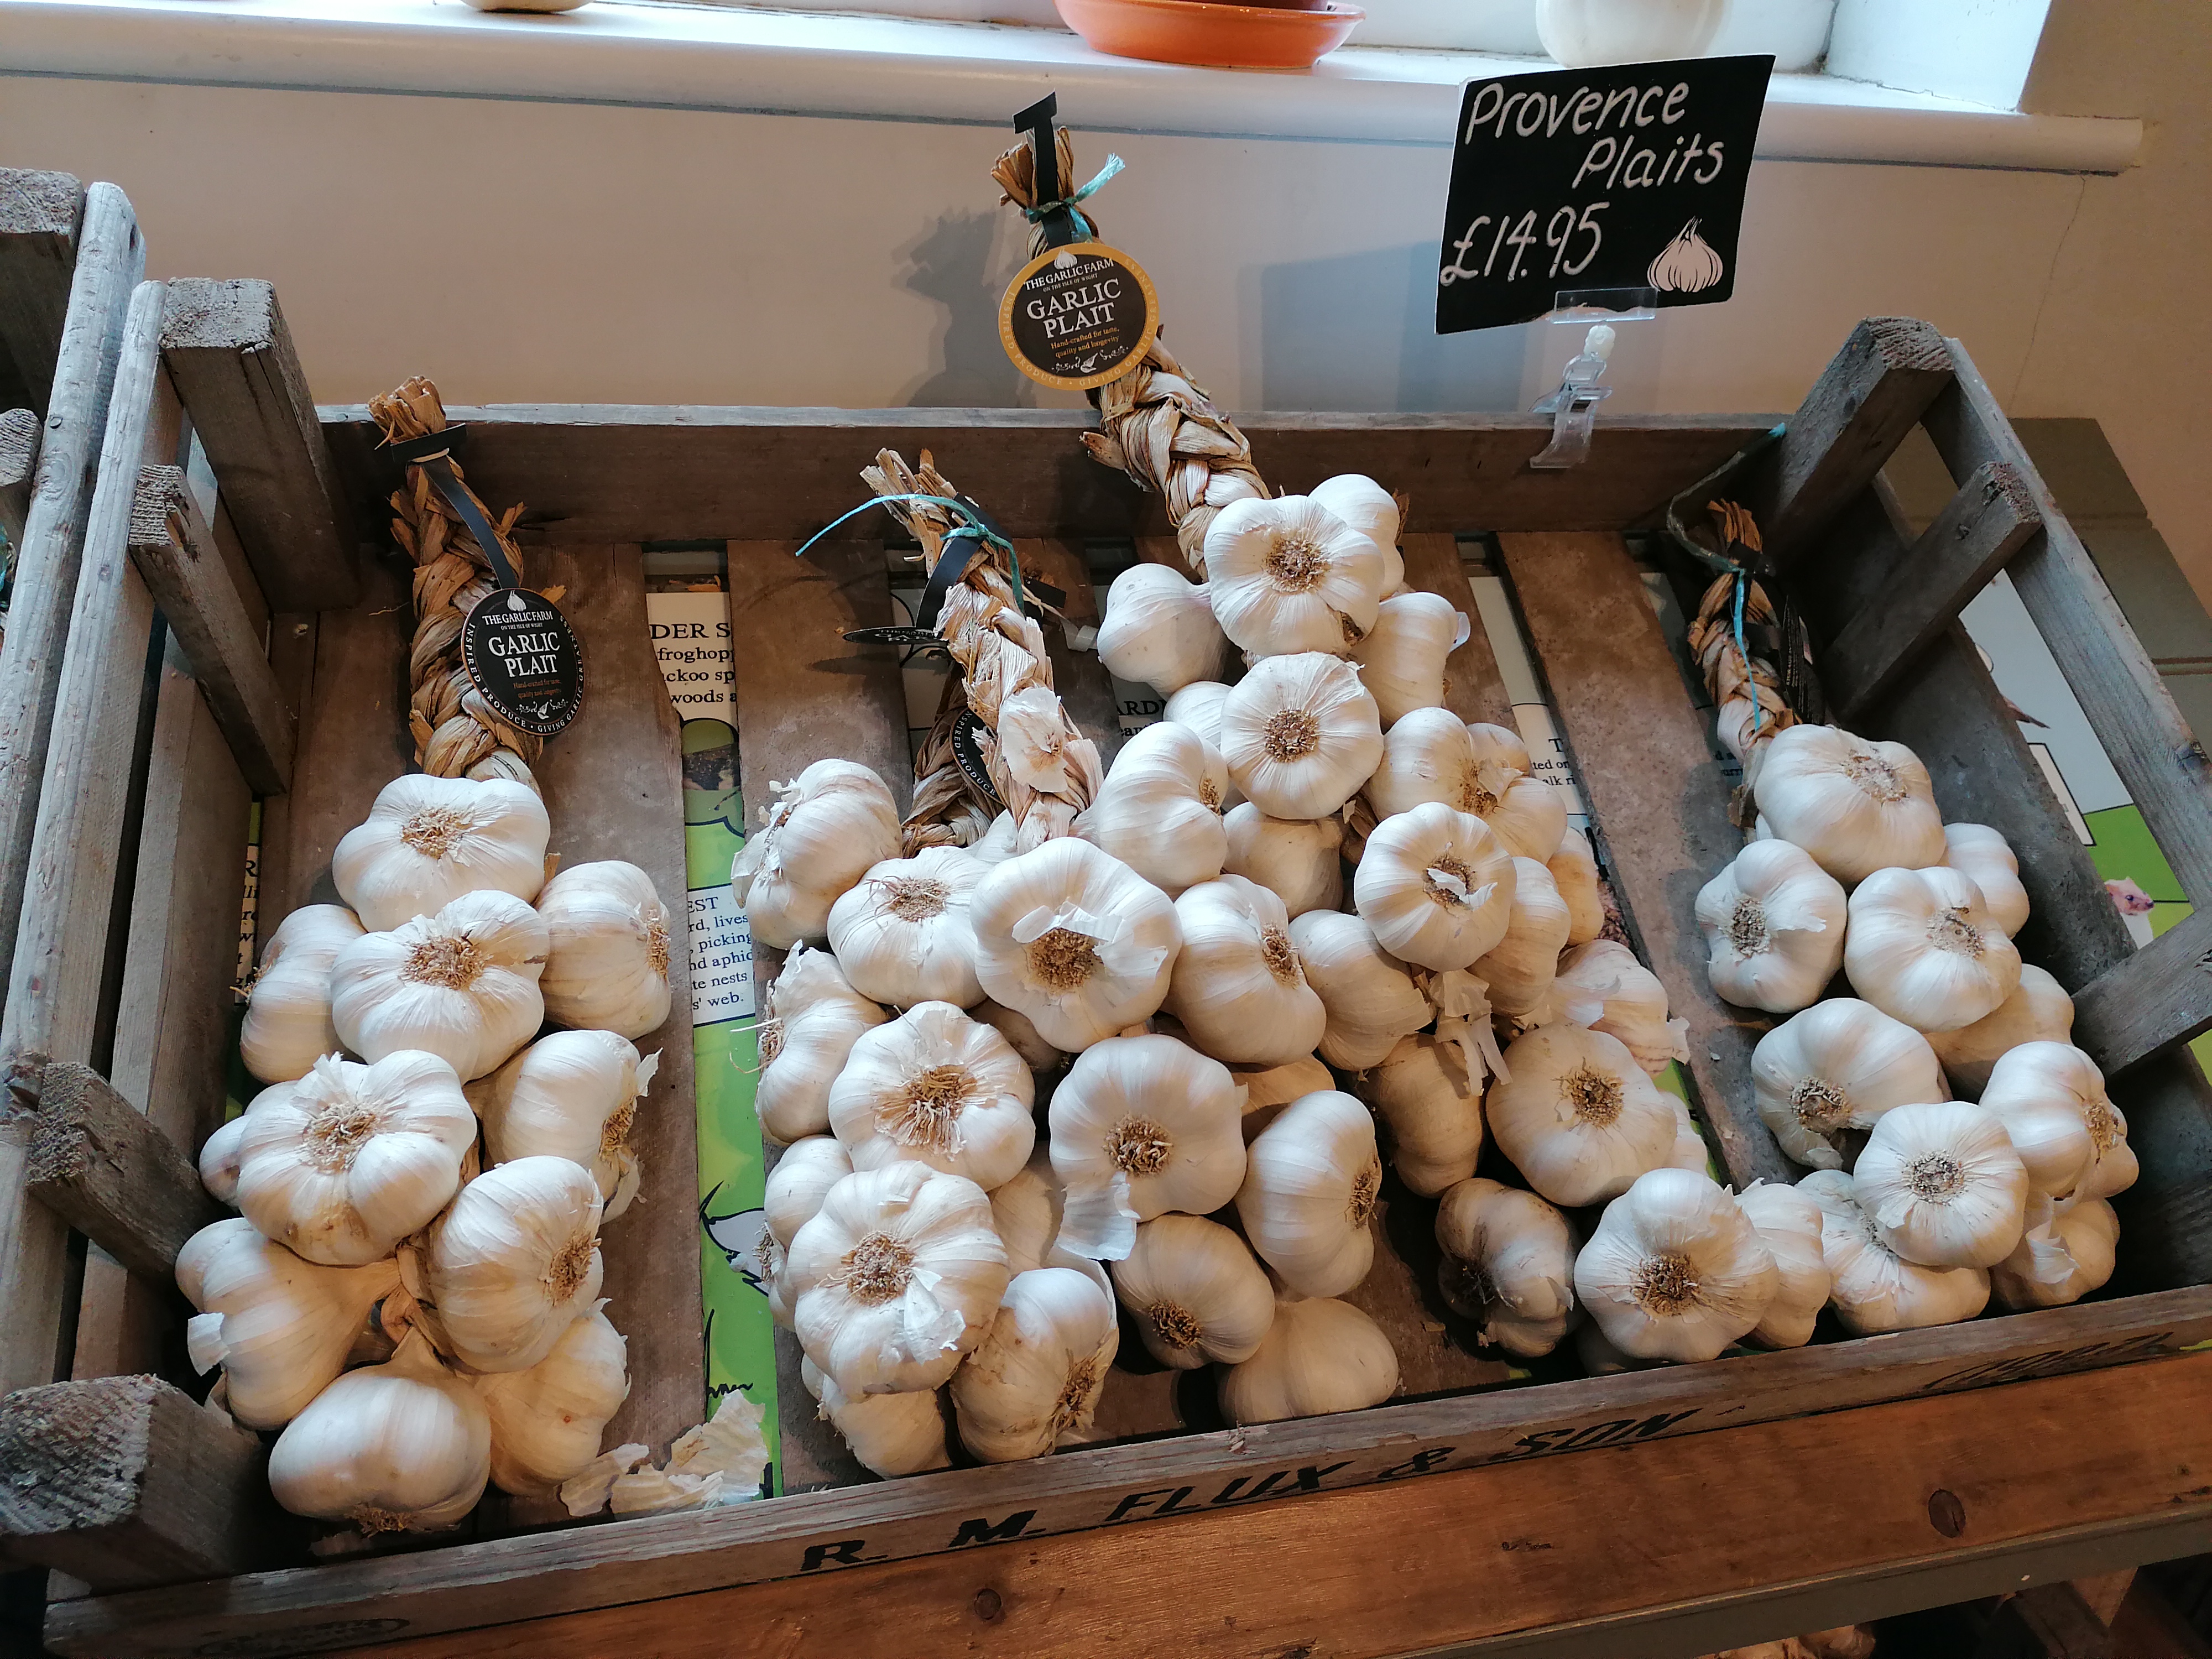 The Garlic Farm